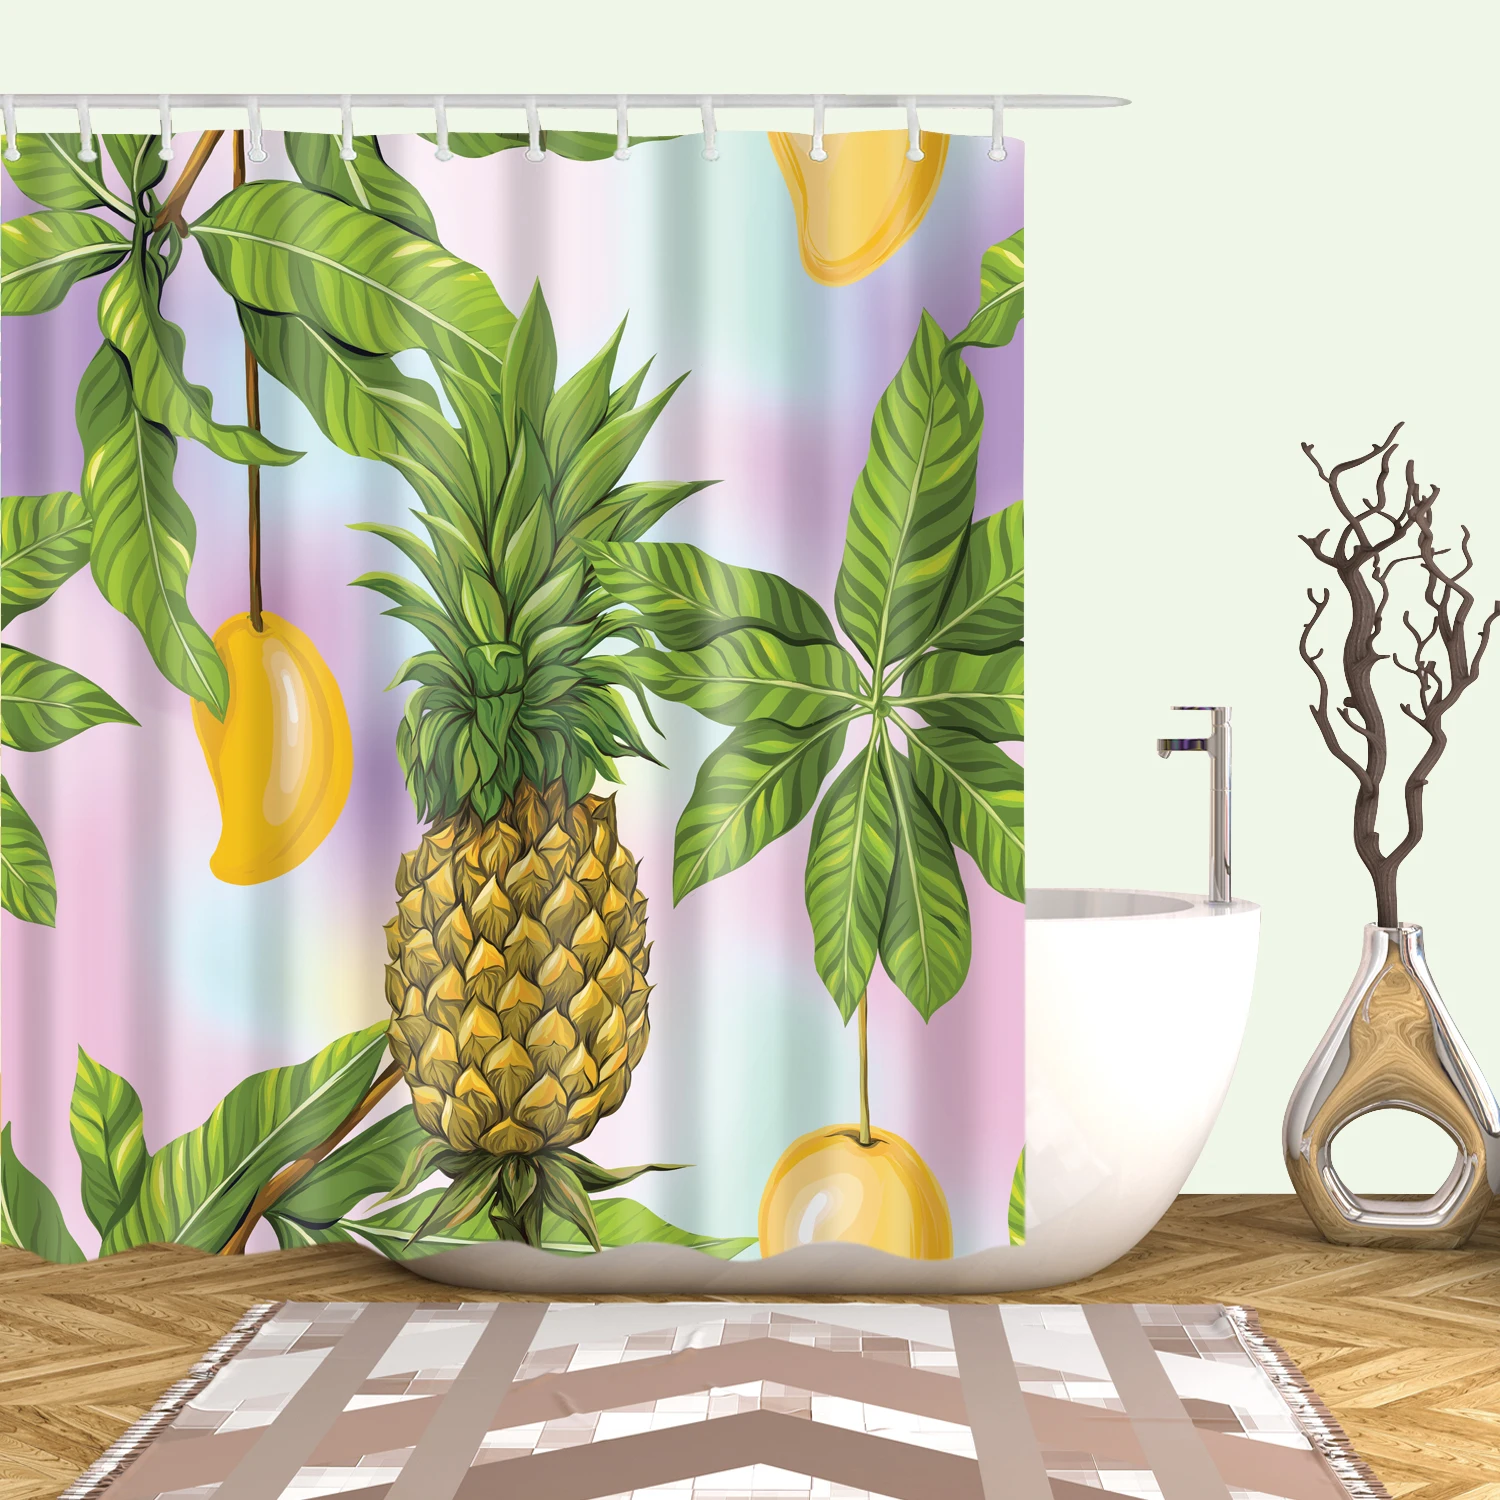 Большая 180x200 см занавеска для ванной из водонепроницаемого полиэстера, занавеска для душа с принтом ананаса, занавеска для ванной - Цвет: C0653